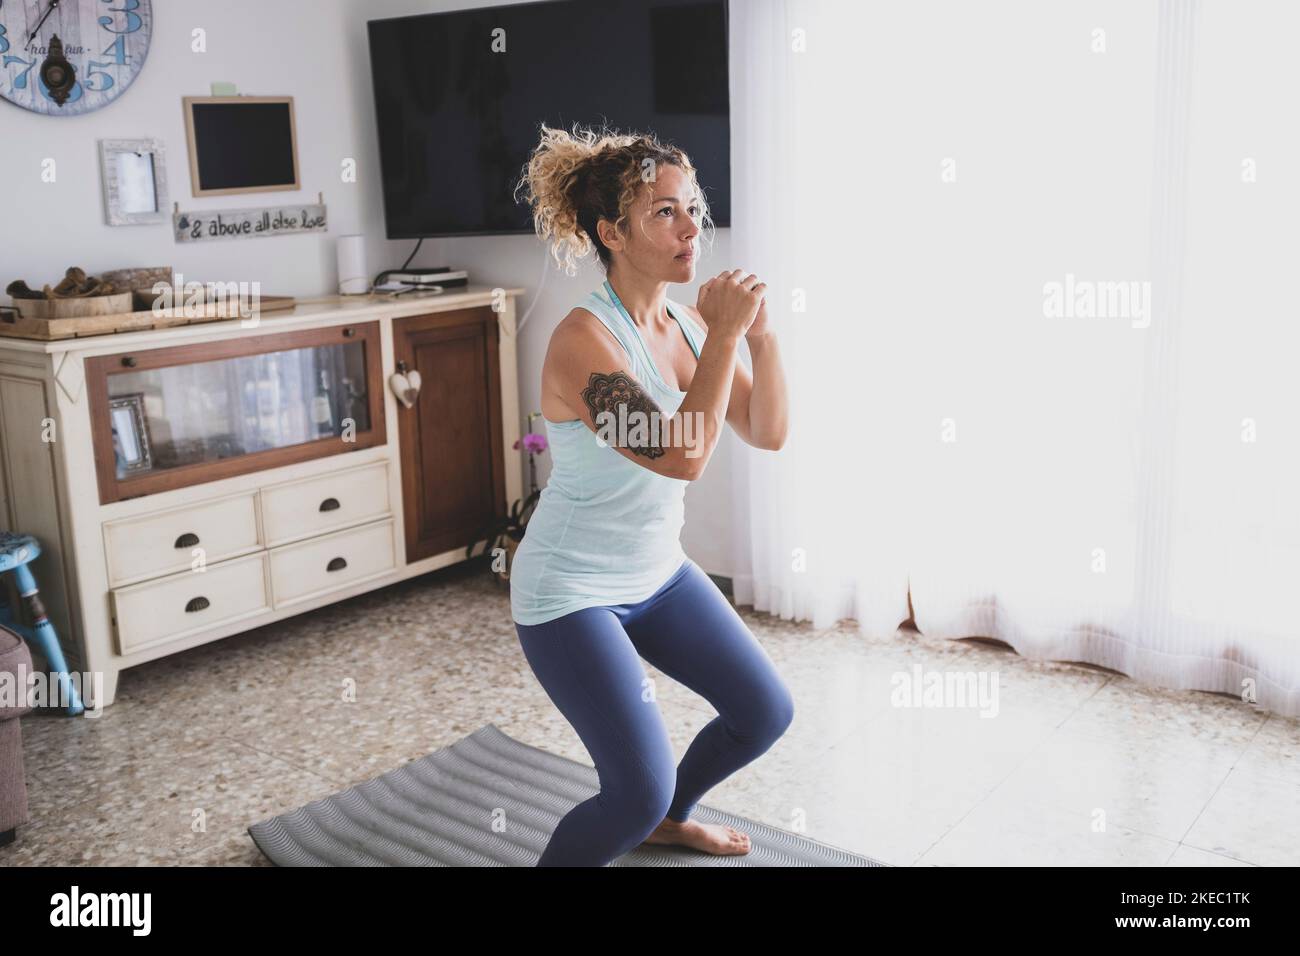 Eine junge Frau zu Hause drinnen tun Übung allein zu Sei fit und gesund - lockiges Mädchen, das Yoga macht Ihr Haus in Quarantäne und Absperrung - schöne aktive Frau Spaß haben Stockfoto